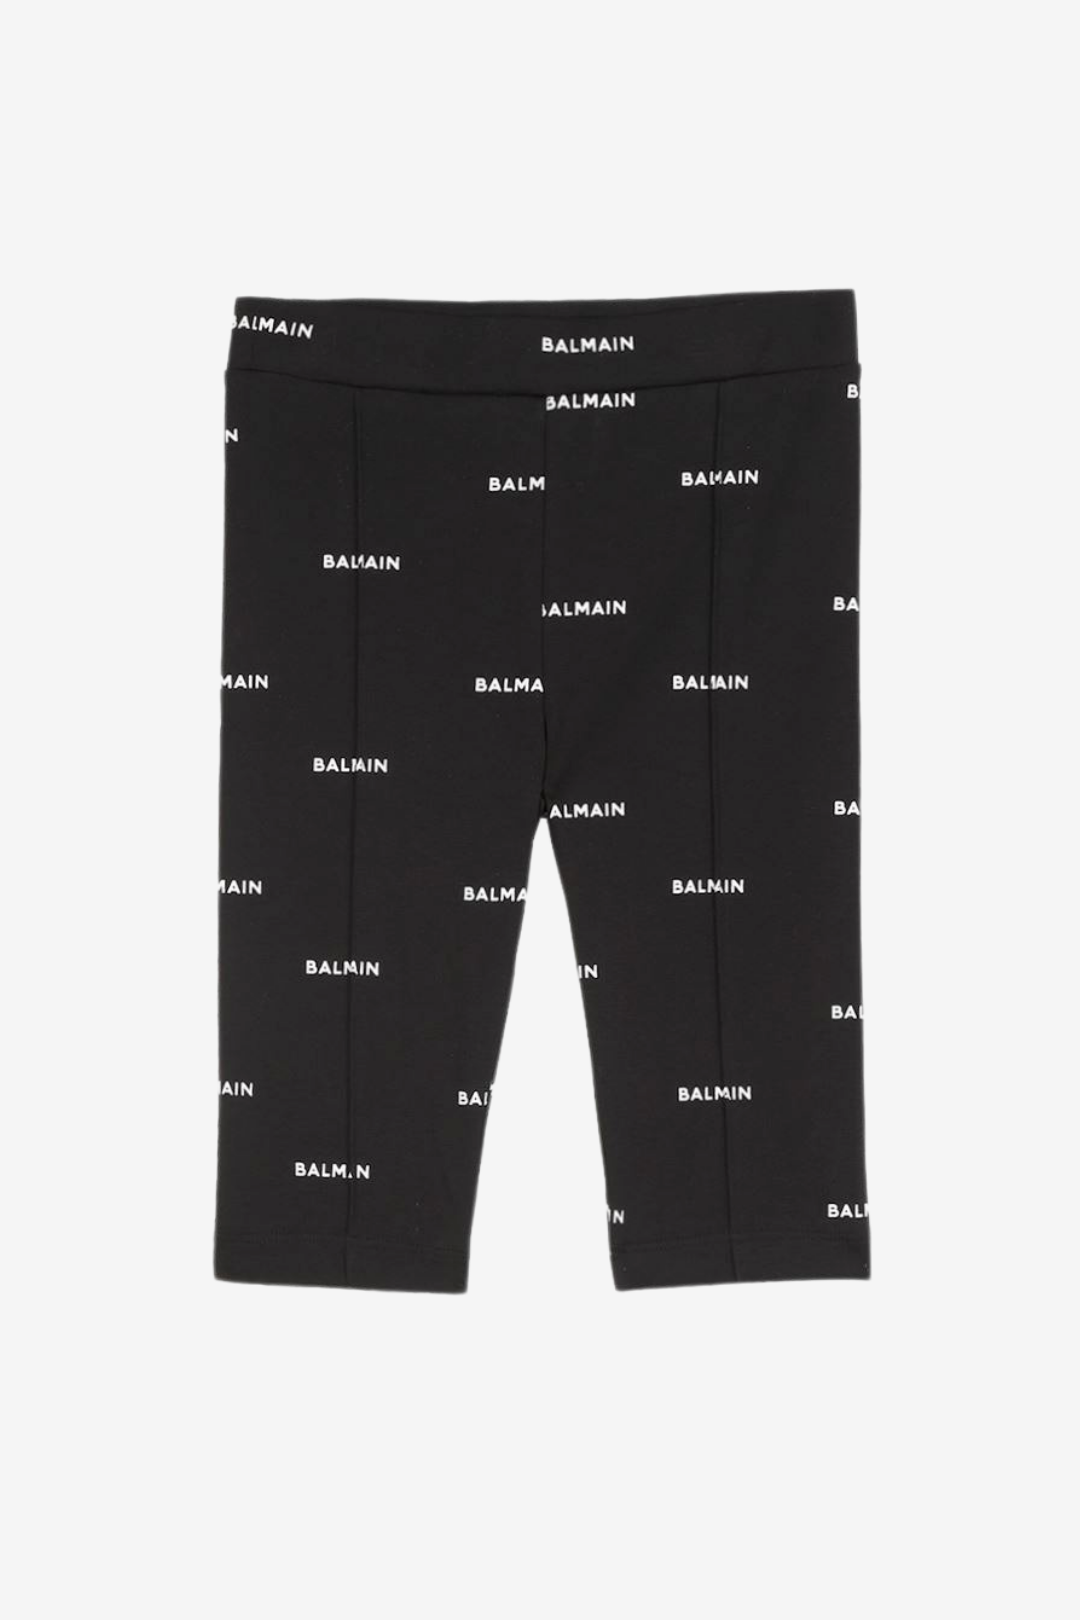 Black cotton leggings with white Balmain logo print